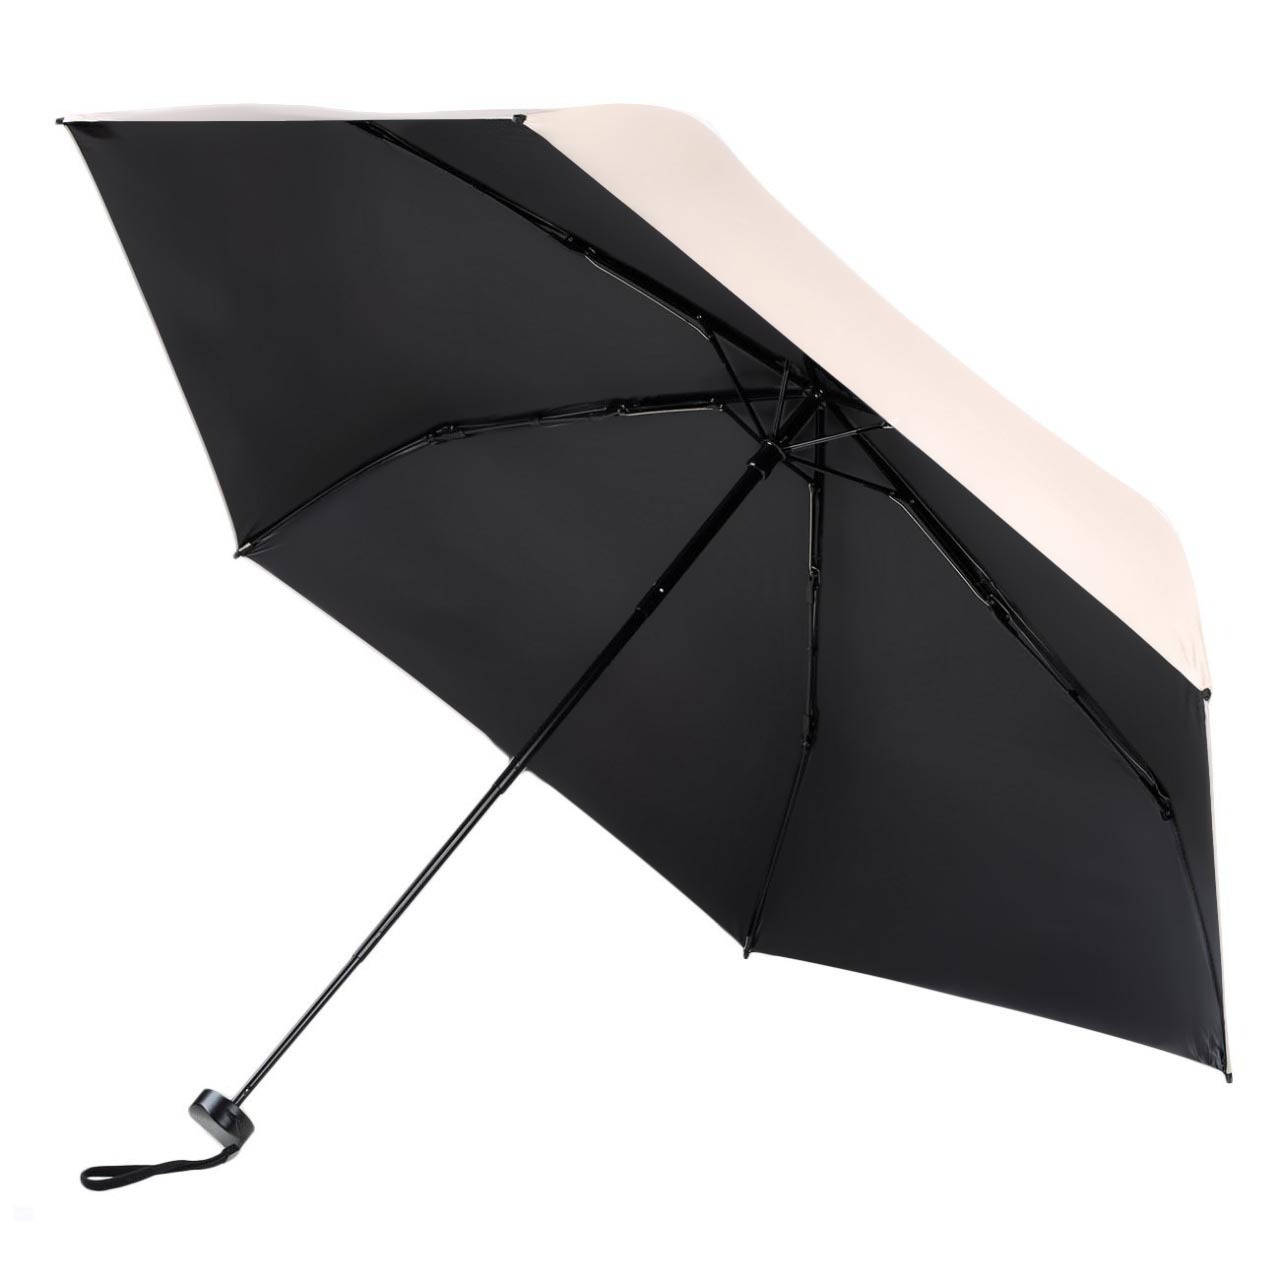 Зонт, 52 см, складной, двусторонний, эпонж, бежево-черный, Rainy day изображение № 4